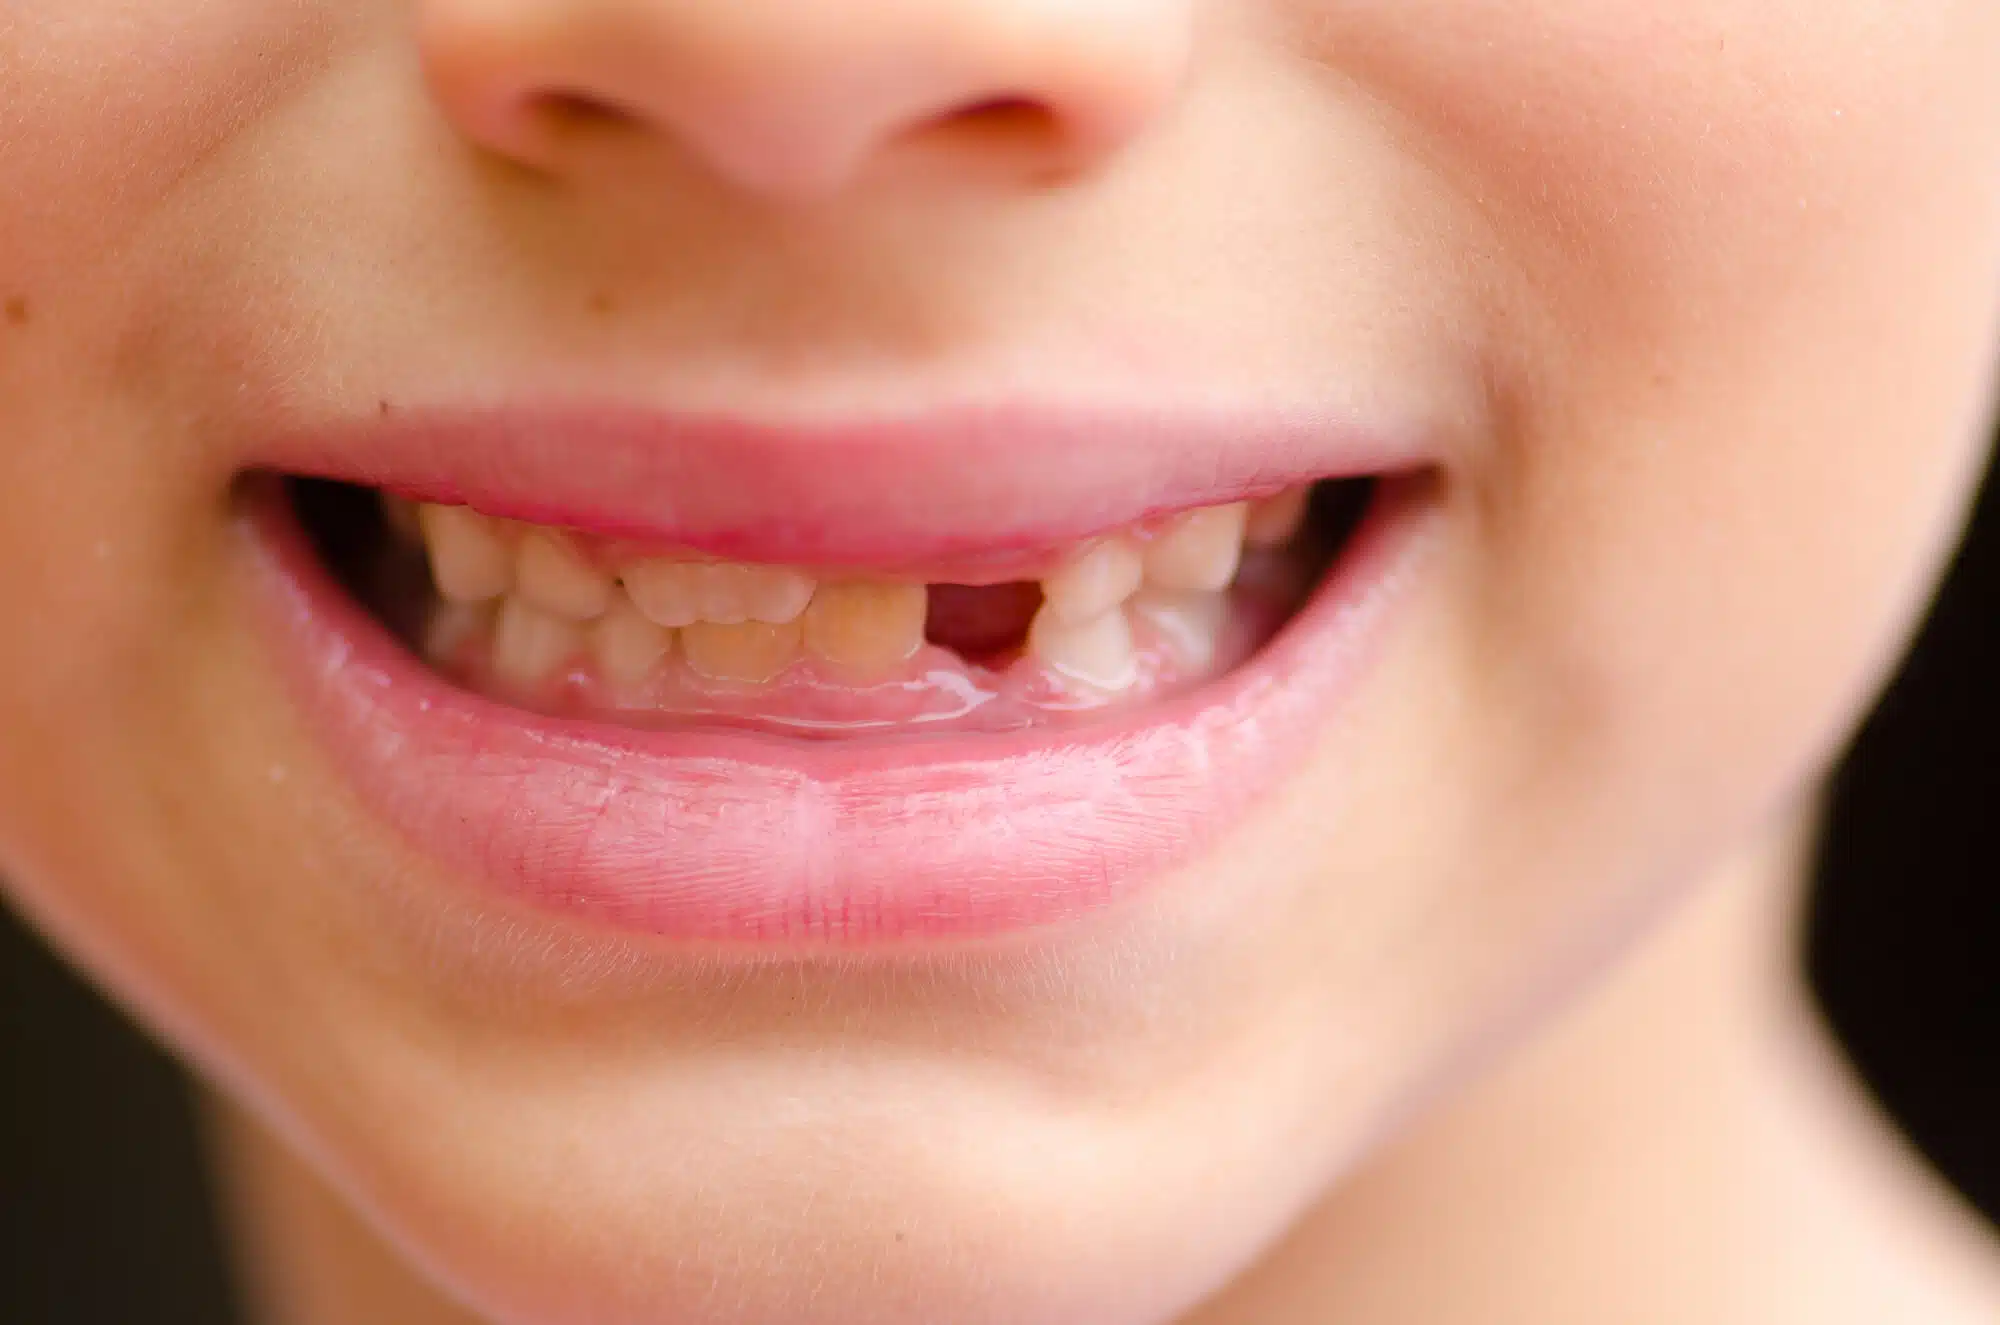 שיני חלב אצל ילדים. <a href="https://depositphotos.com. ">המחשה: depositphotos.com</a>